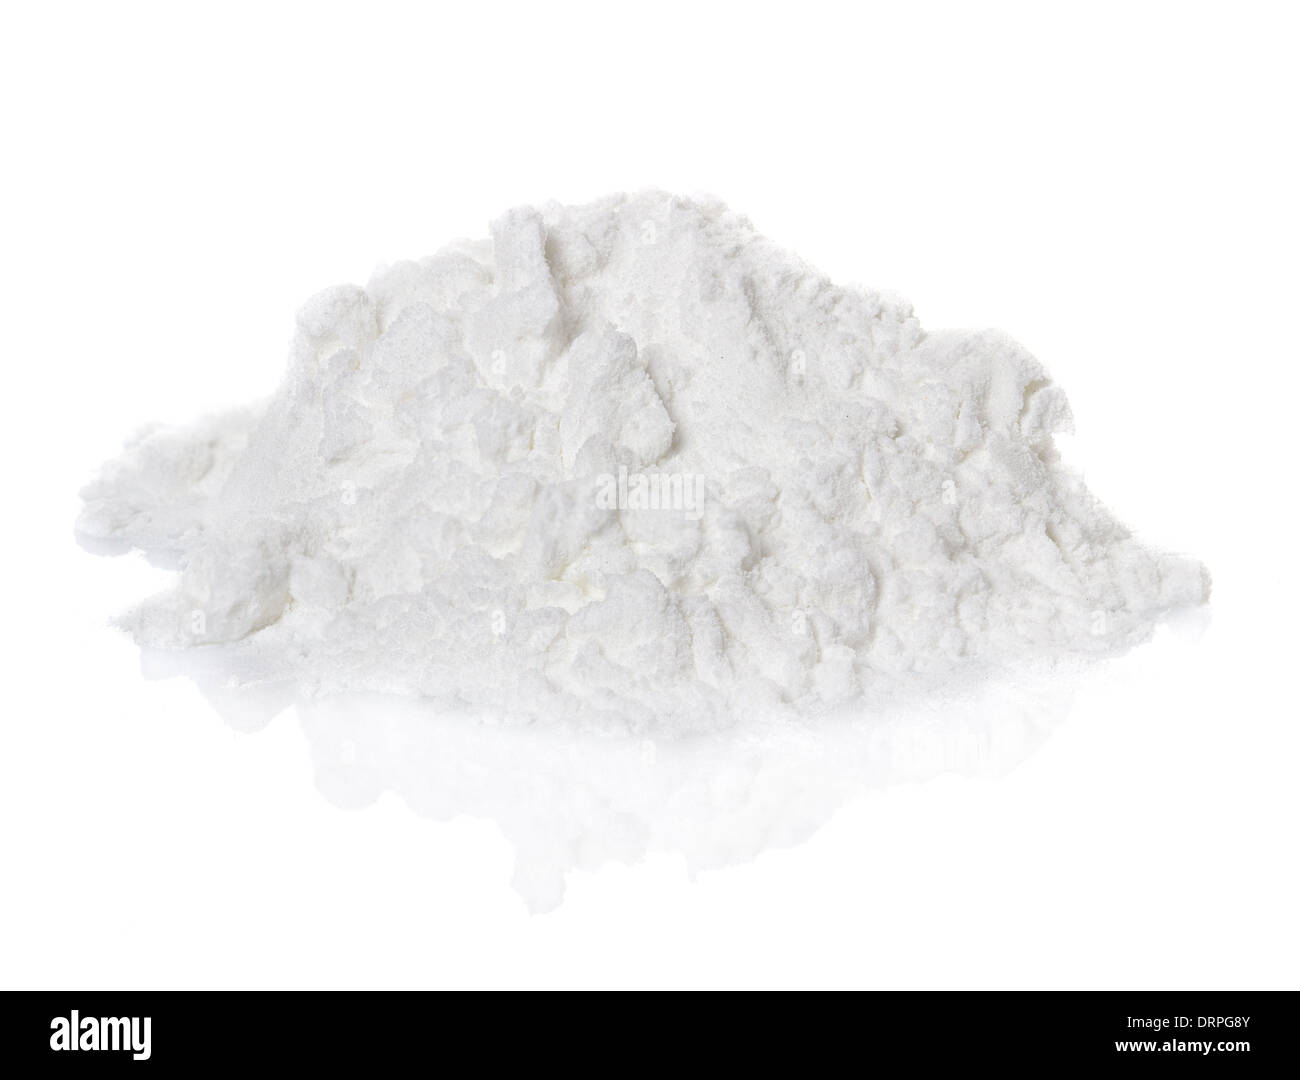 La cocaïne drogue heap isolé sur fond blanc Banque D'Images